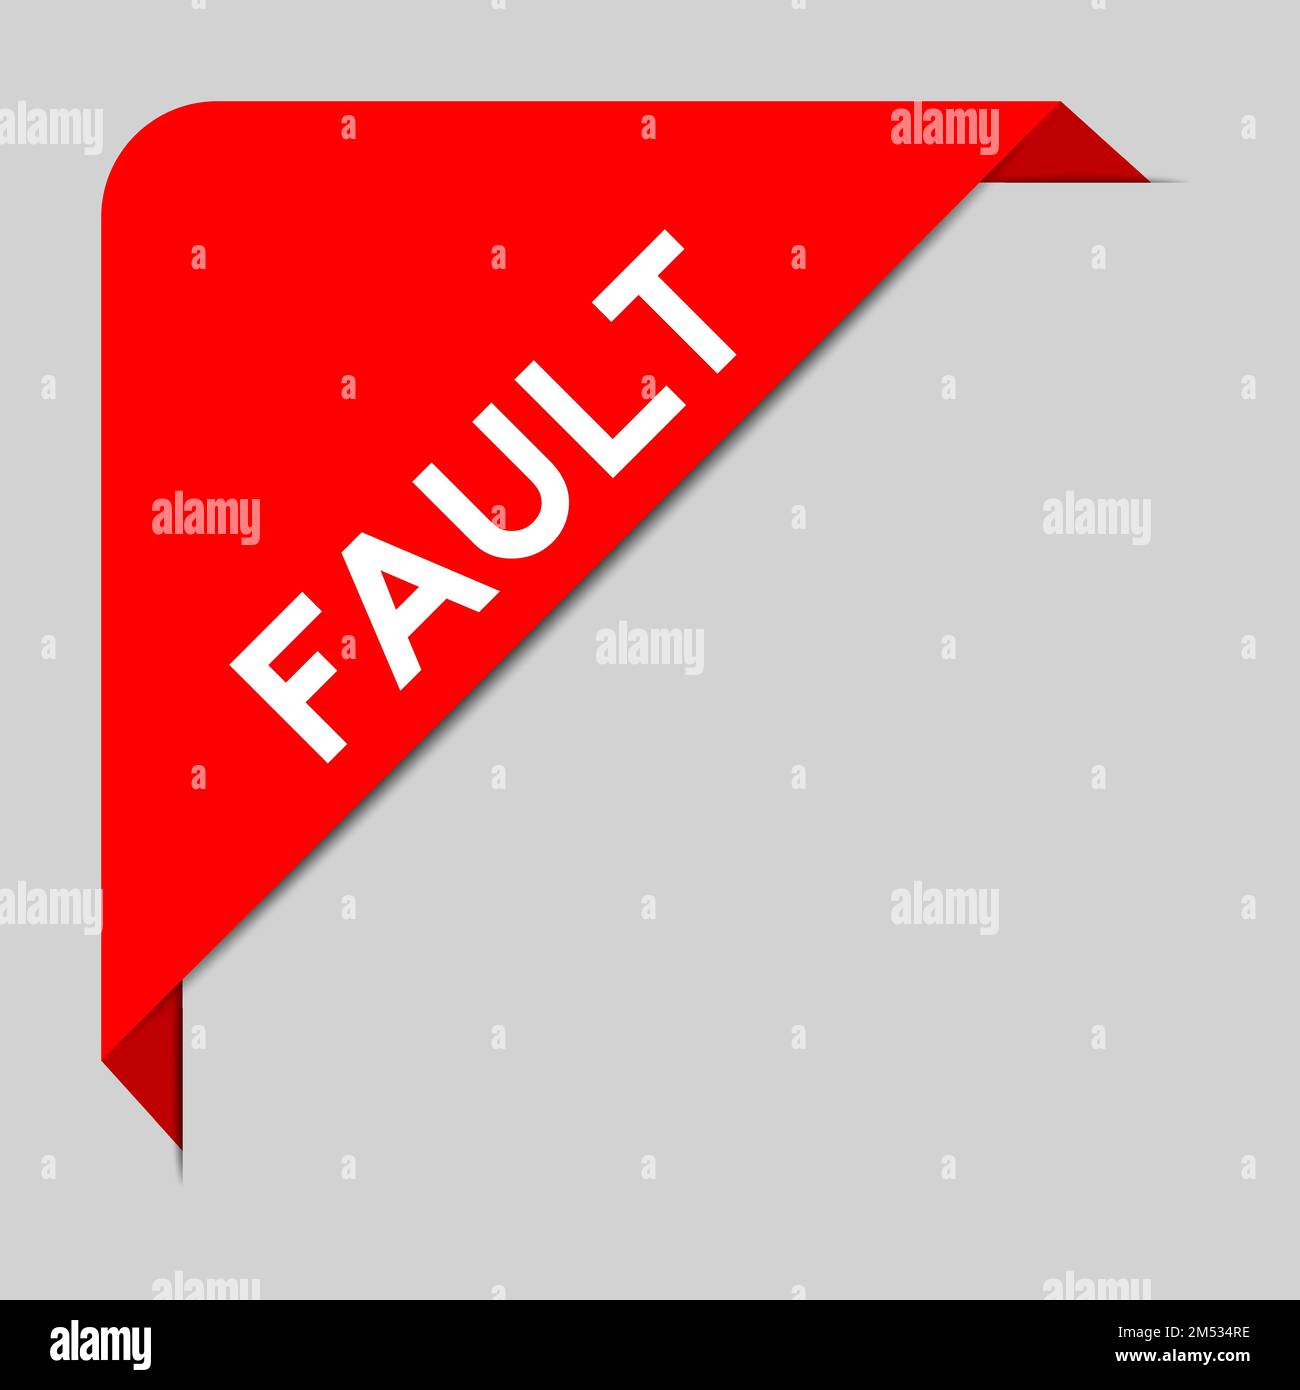 La bannière de l'étiquette d'angle est de couleur rouge et le mot défaut est affiché sur fond gris Illustration de Vecteur